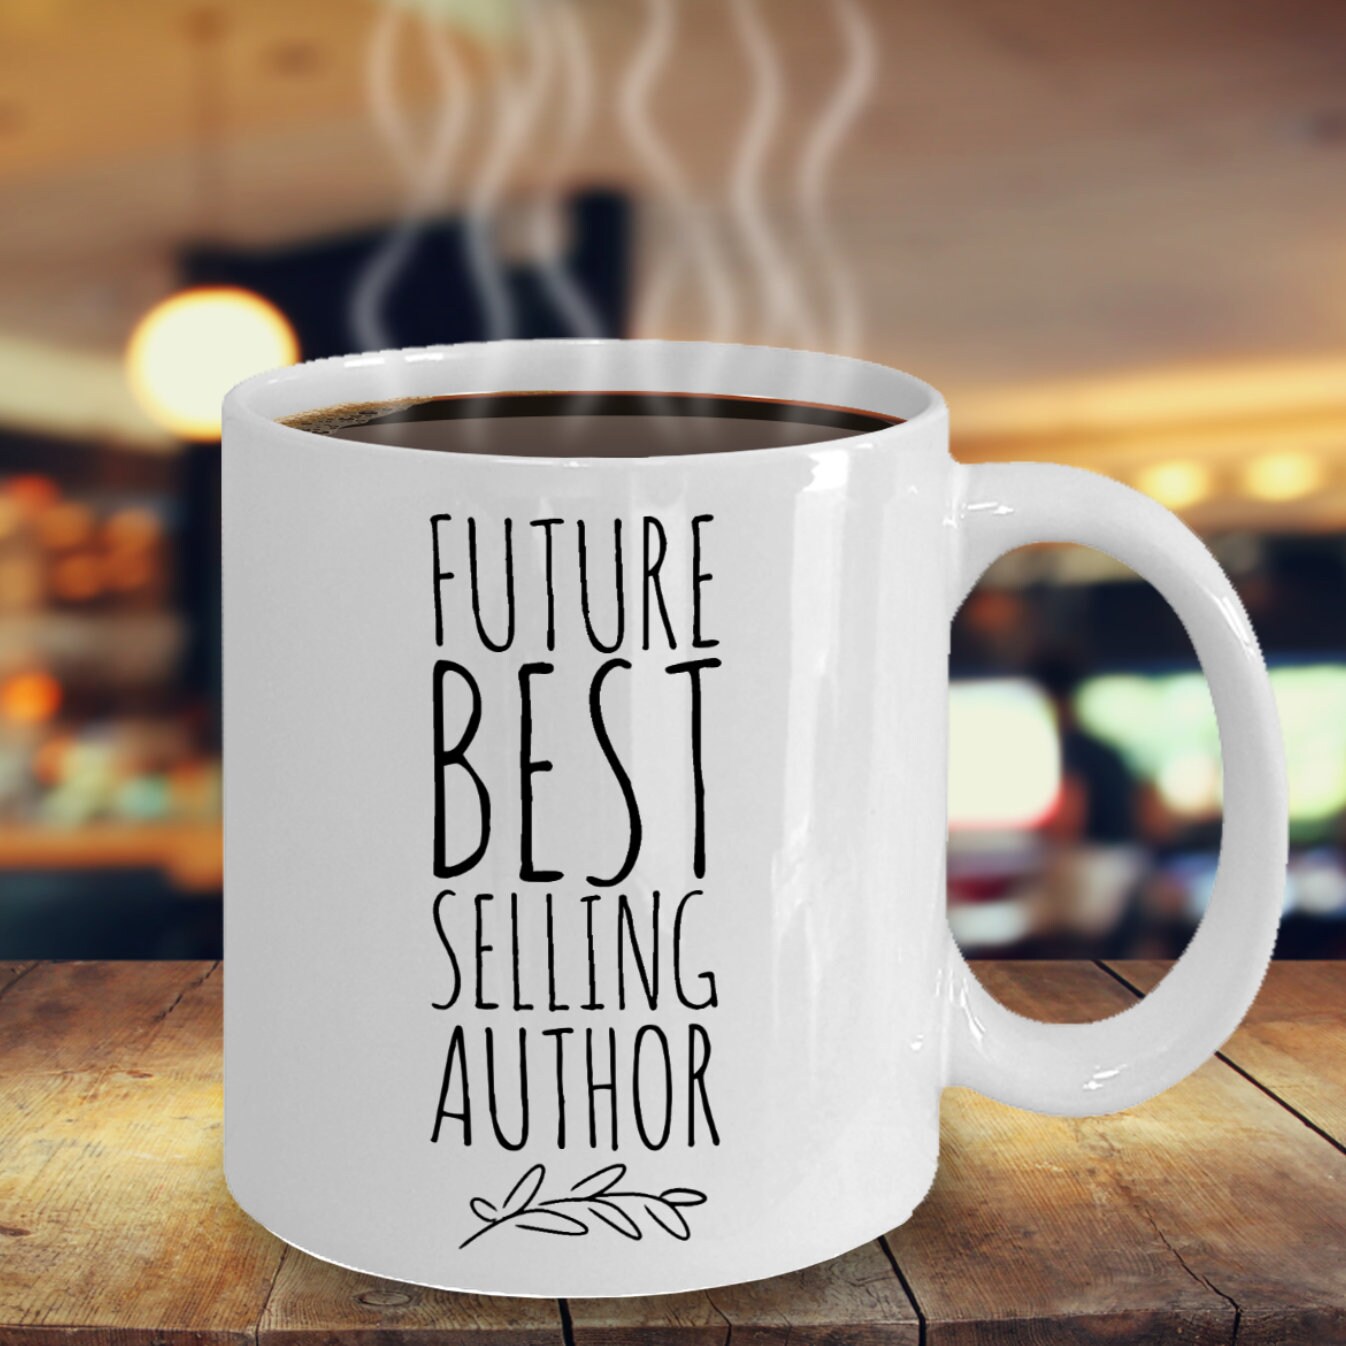 Mac_Txt_1802 Future Best Selling Author Mug and Coaster 